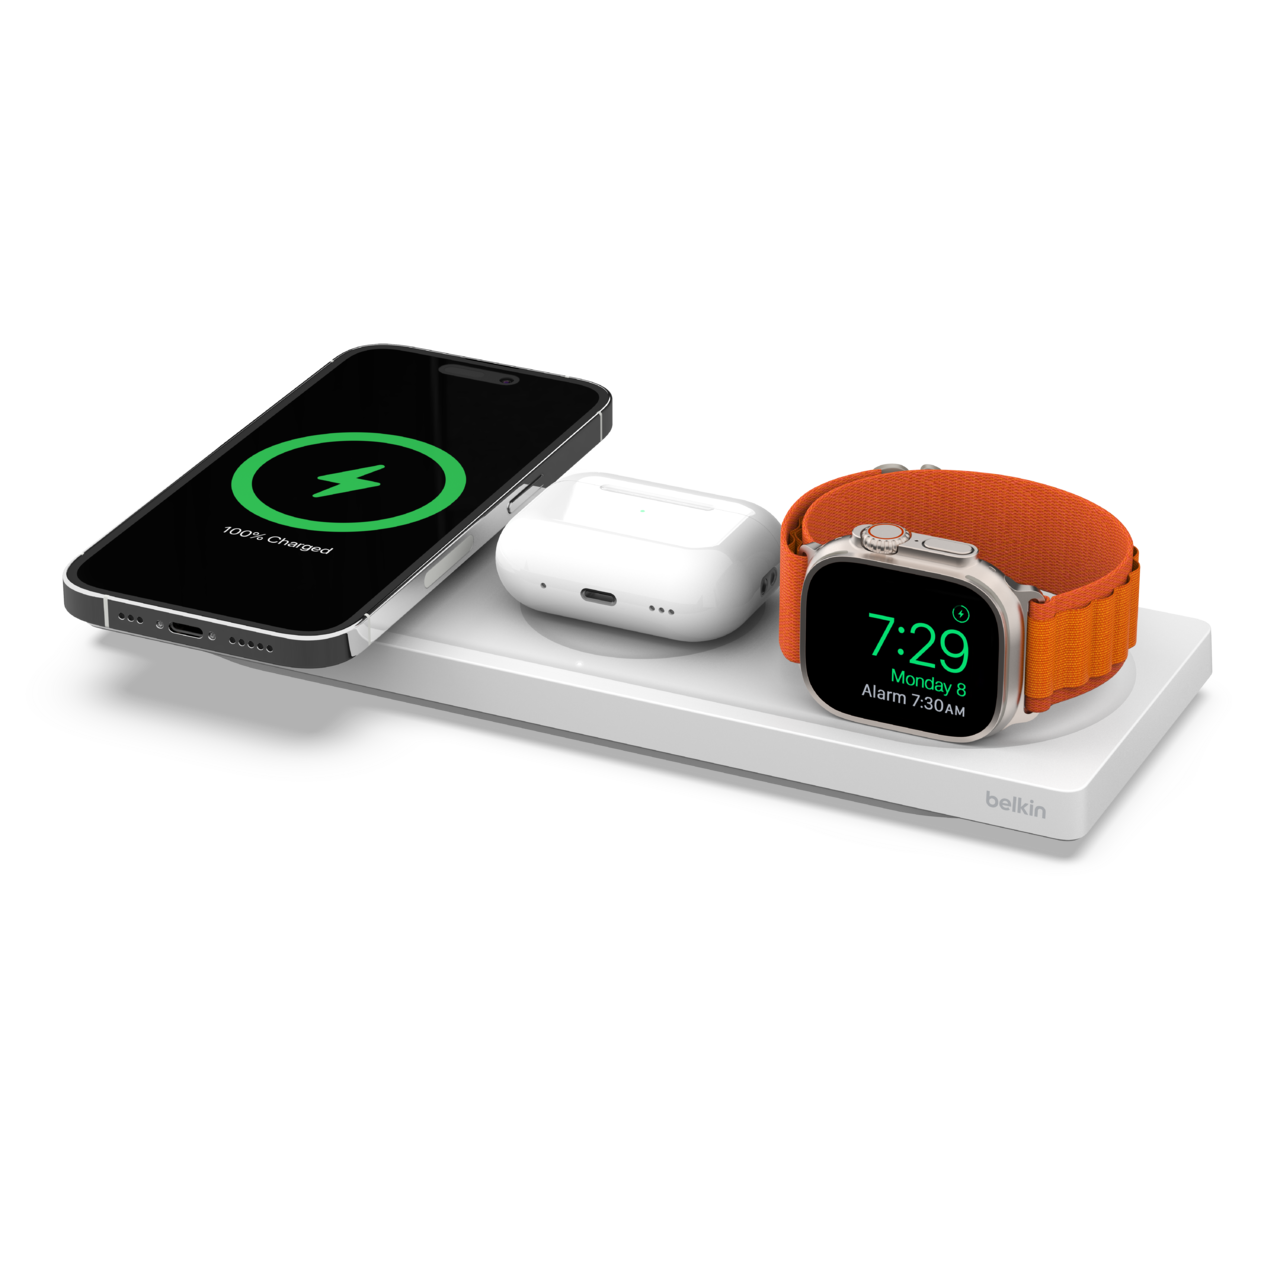 3-in-1 Apple MagSafe Wireless Charger Pad | Belkin US | Belkin US